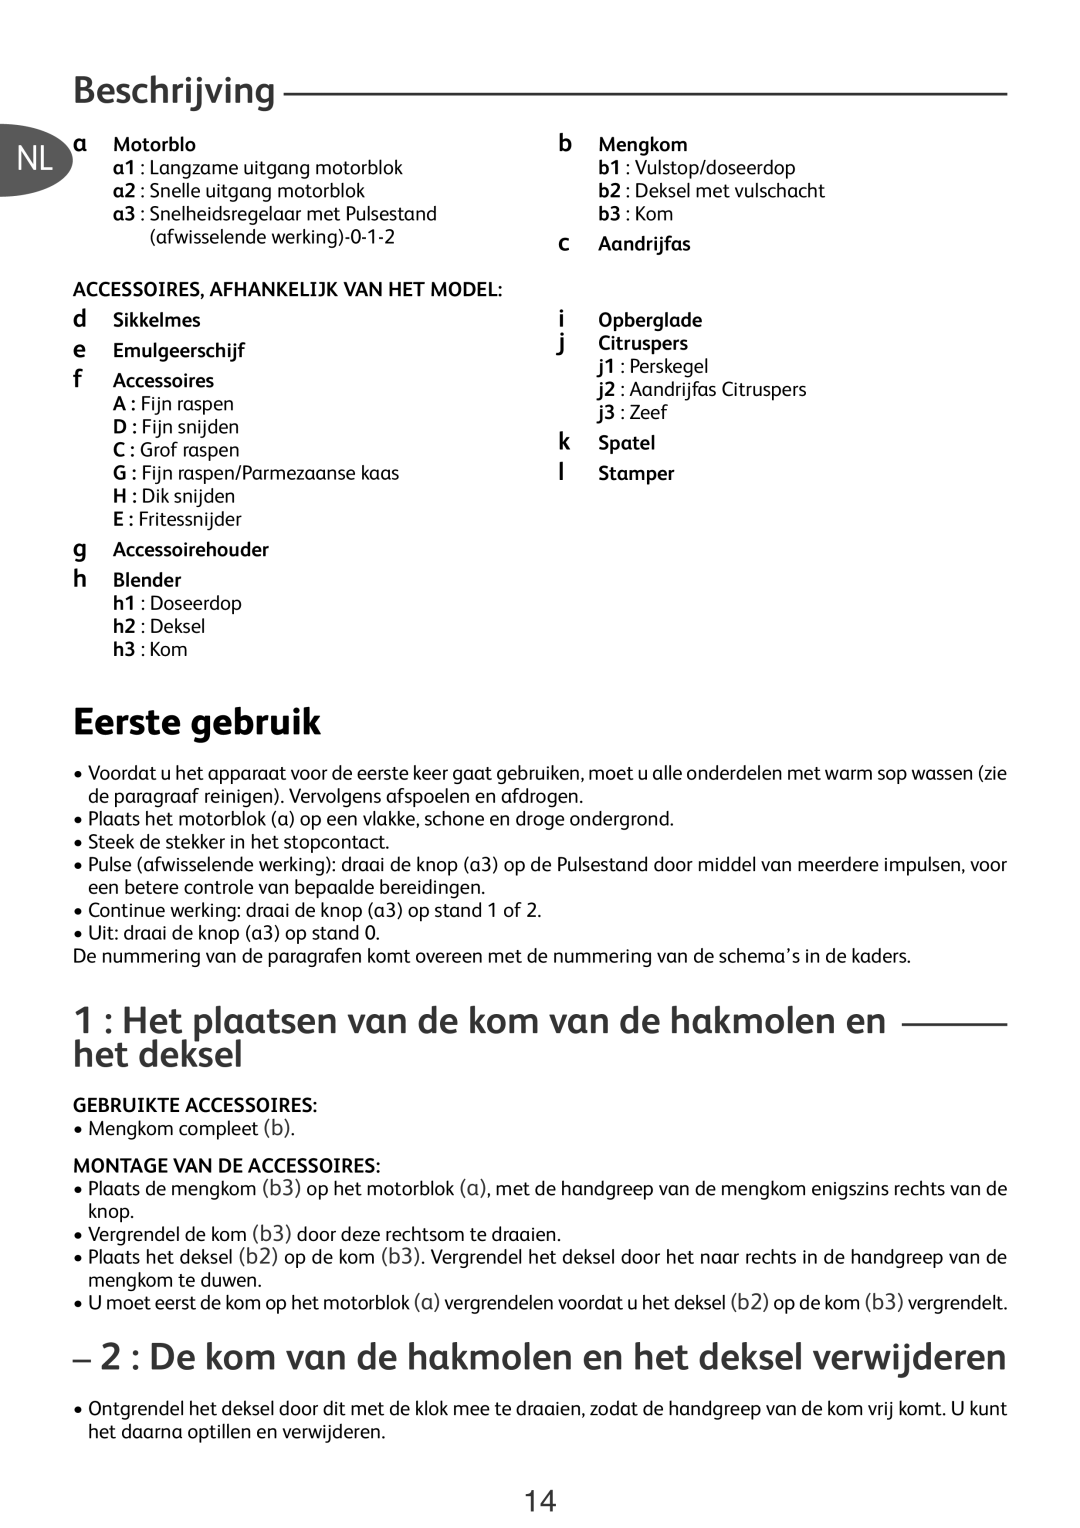 Tefal DO250DAN manual Beschrijving, Eerste gebruik, Het plaatsen van de kom van de hakmolen en het deksel, NL a Motorblo 